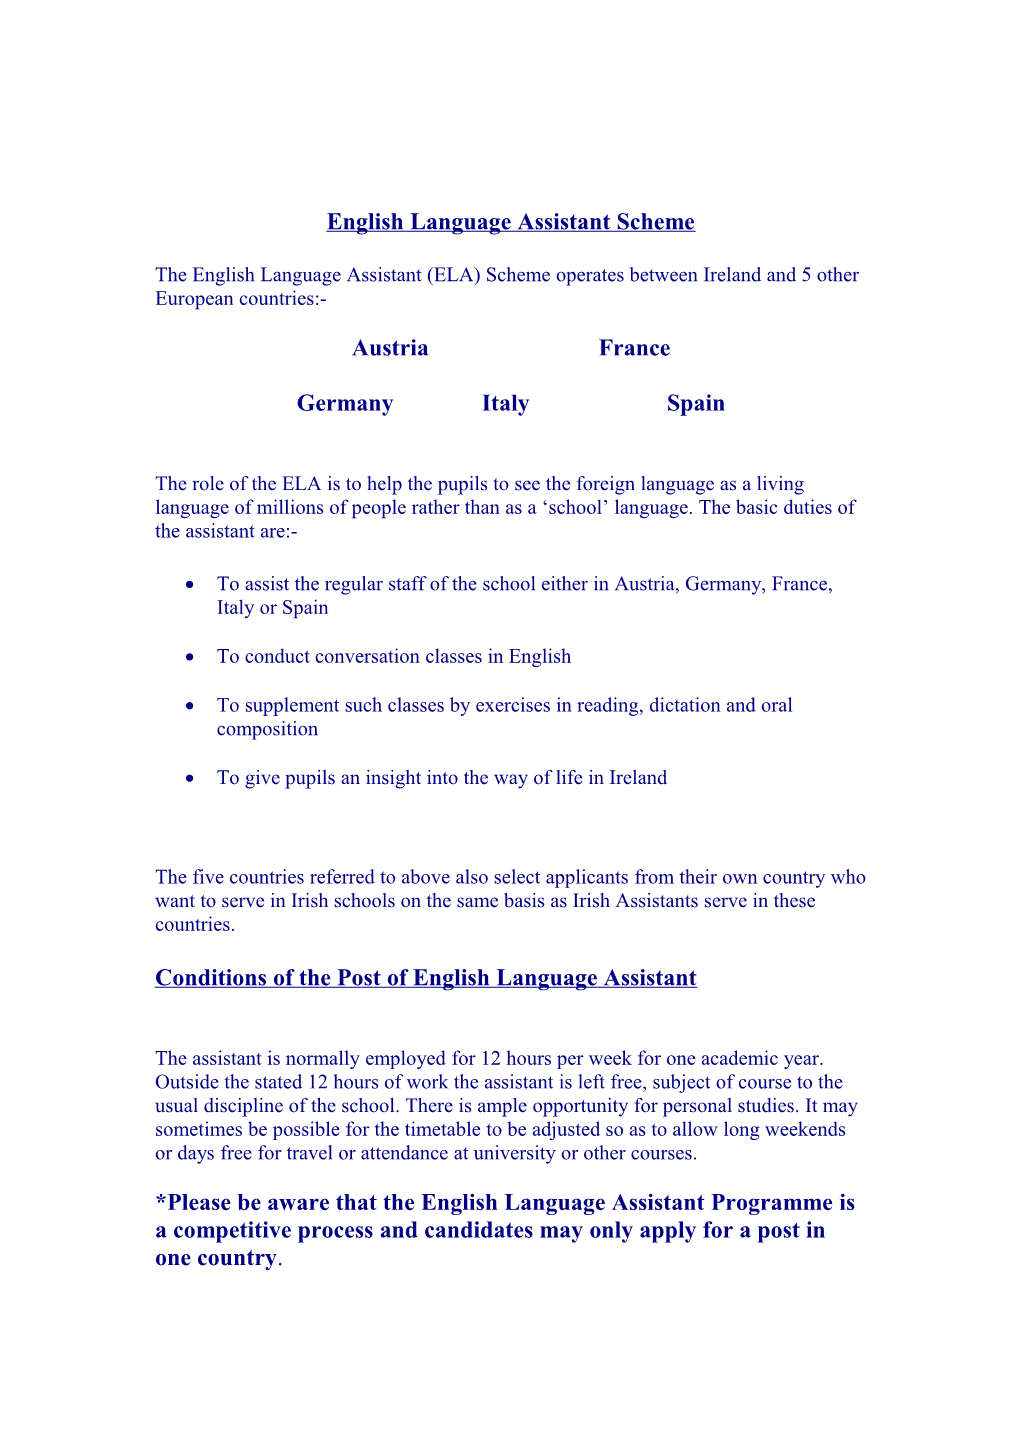 Language Assistant Programme